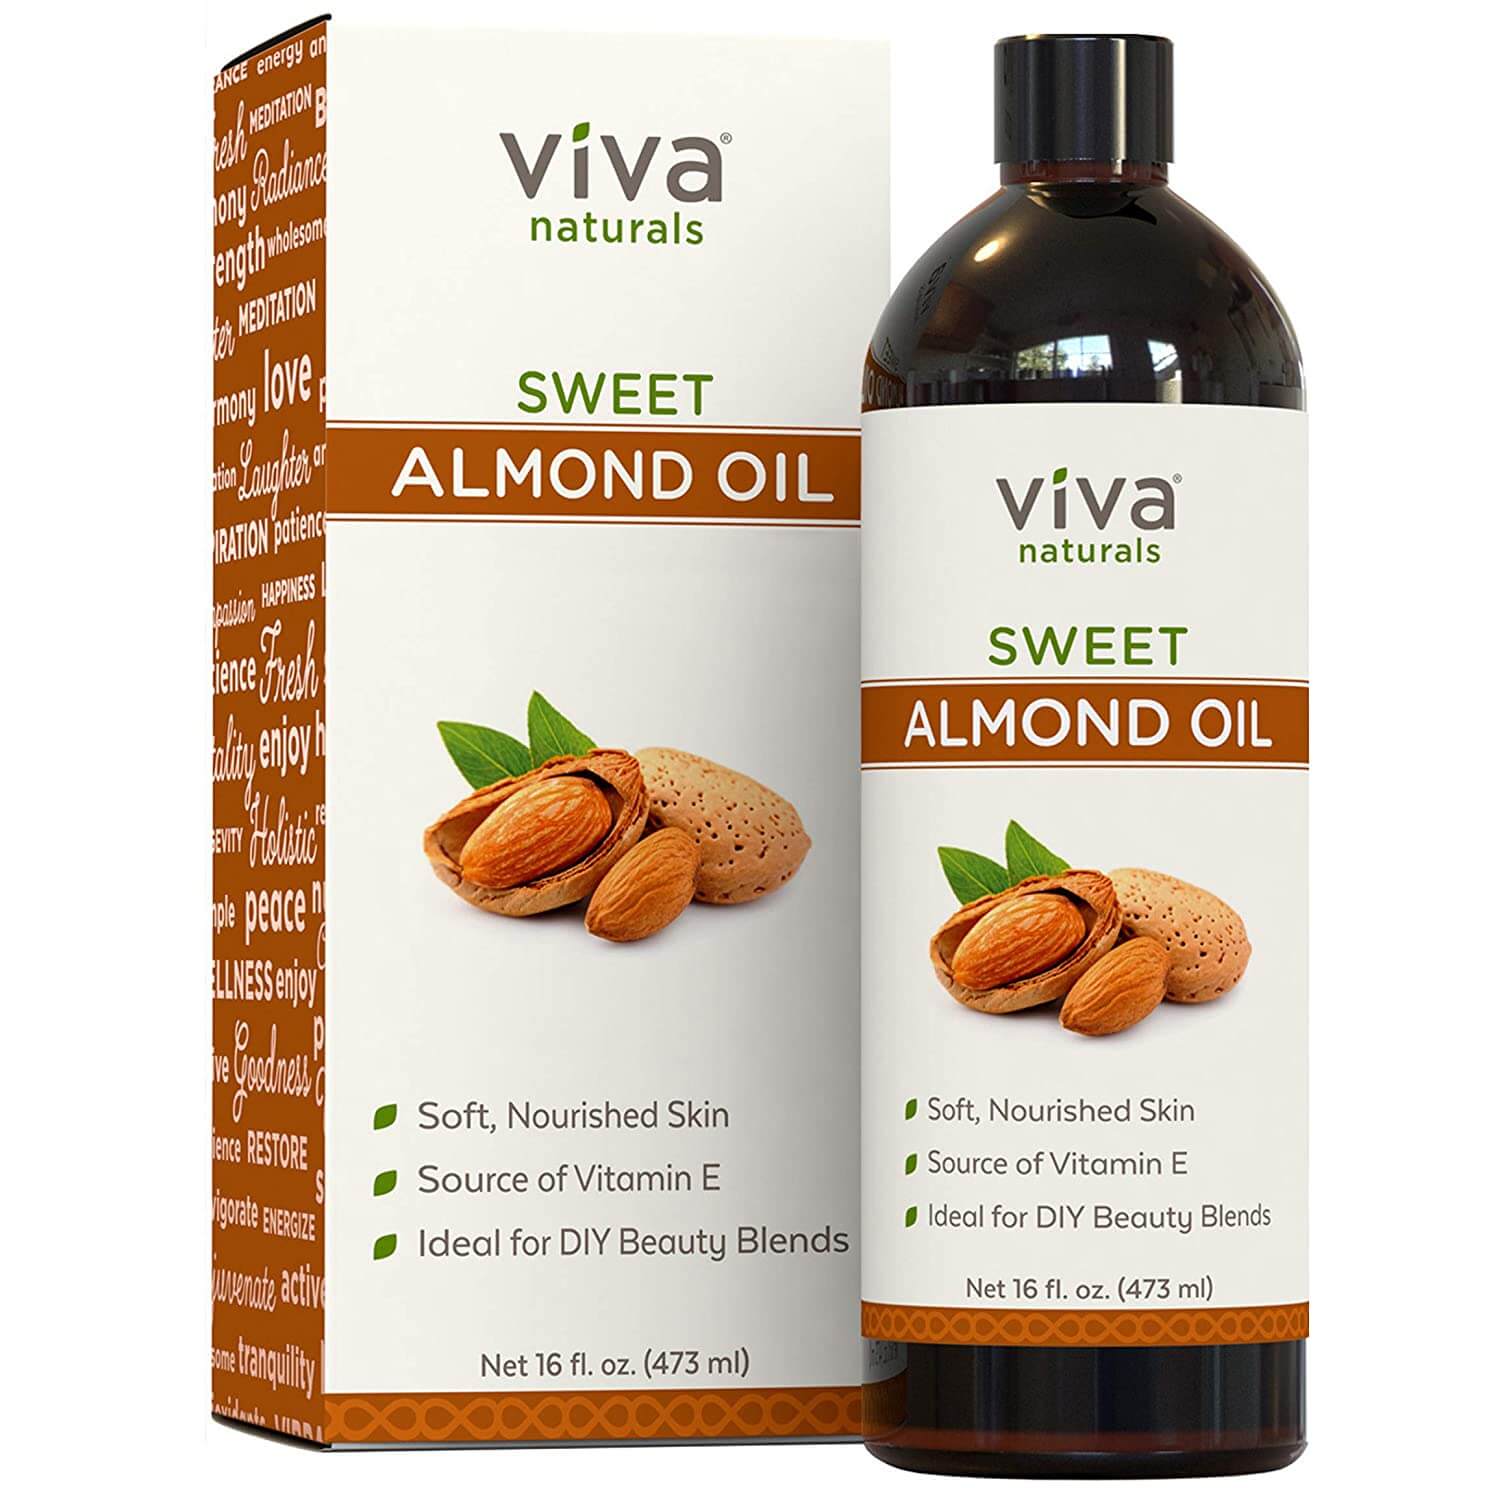 Viva natural sweet almond oil